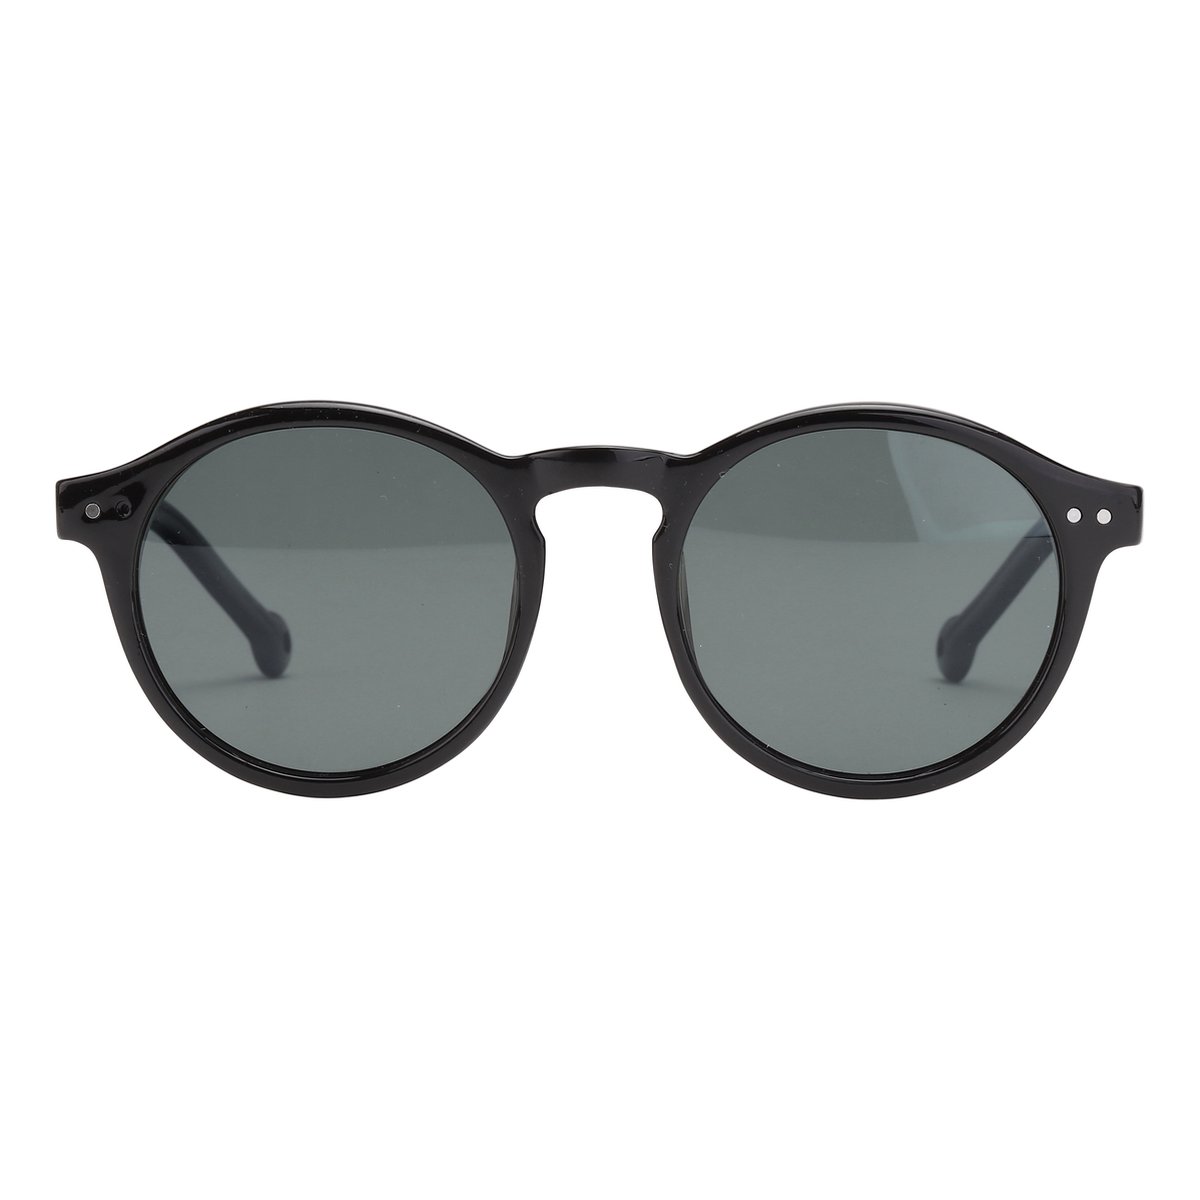 ™Monkeyglasses Bille 45 Black Sun - Zonnebril - 100% UV bescherming - Danish Design - 100% Upcycled